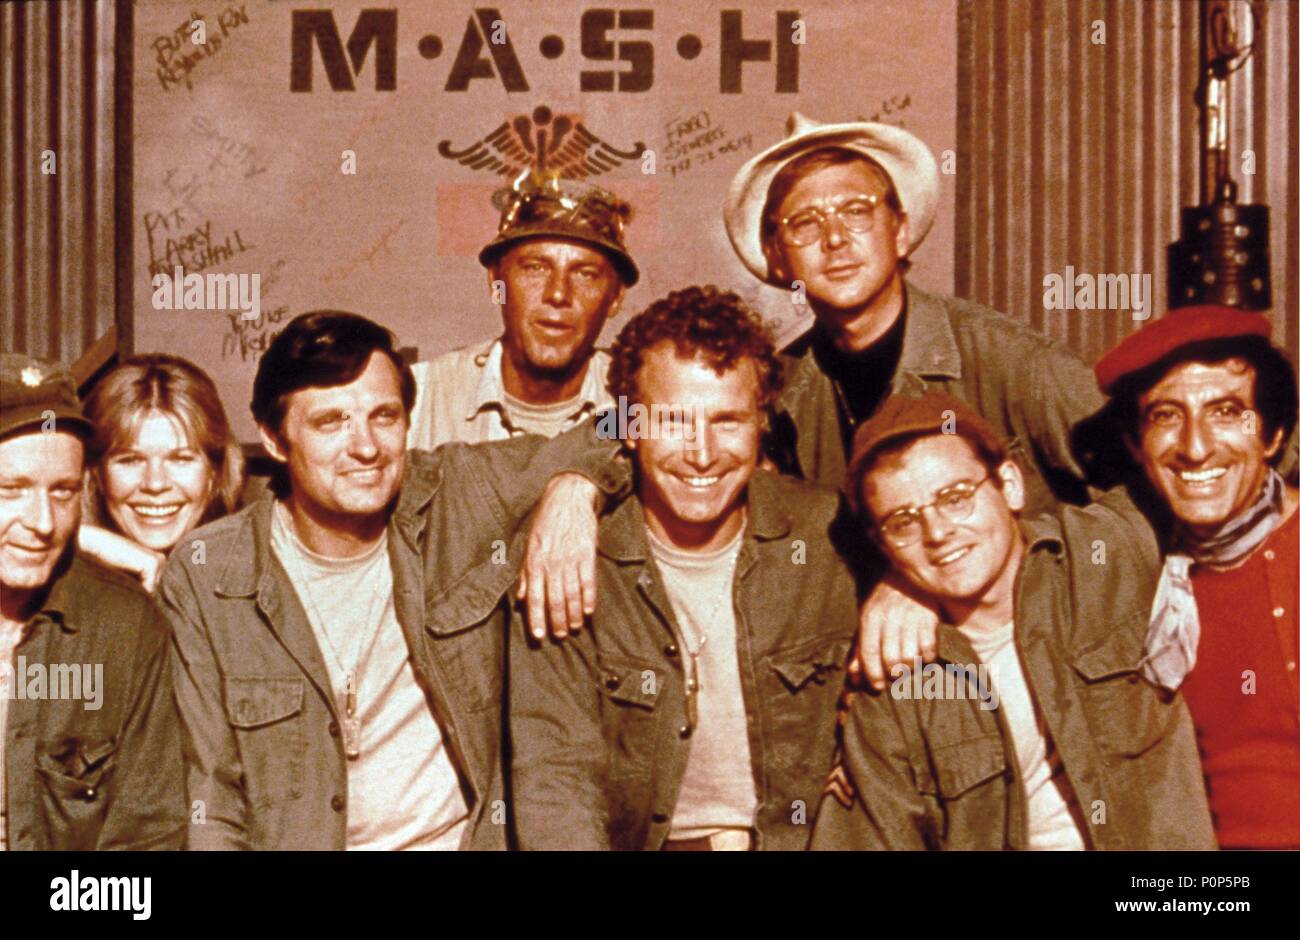 Original Film Titel: M*A*S*H. Englischer Titel: M*A*S*H. Jahr: 1972. Stars: Alan Alda, Loretta Swit, Gary Burghoff. Quelle: 20th Century Fox TV/Album Stockfoto